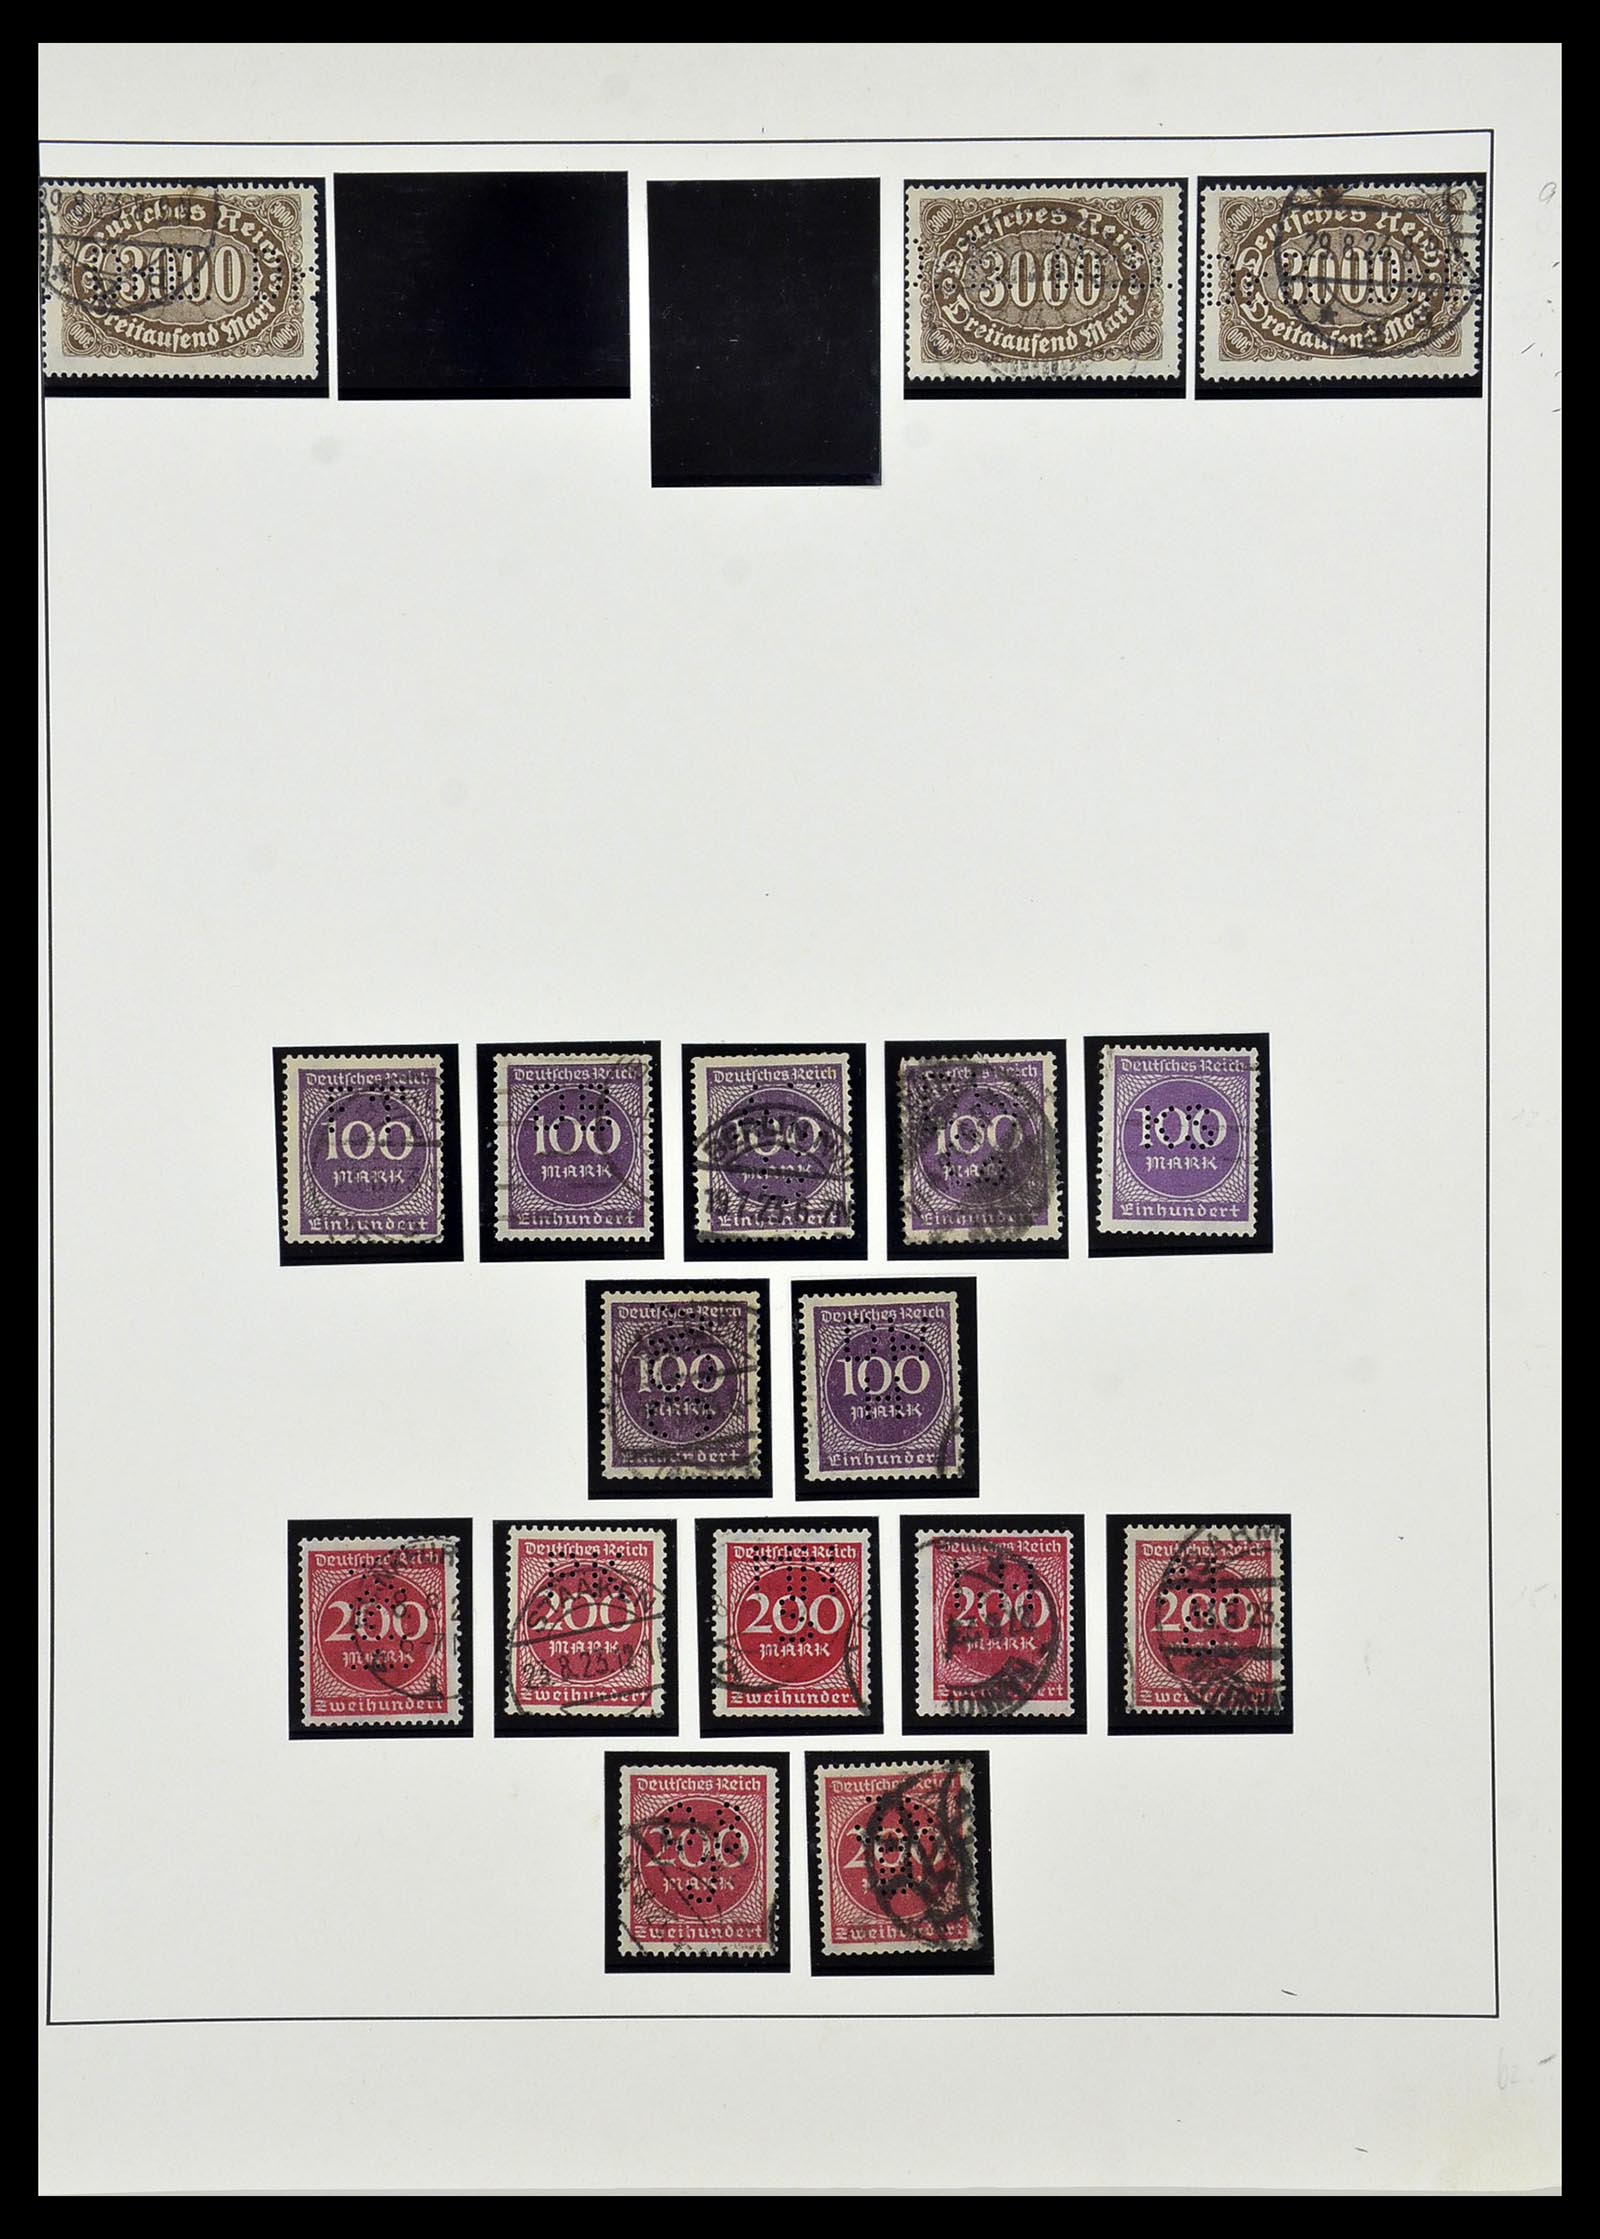 34409 014 - Stamp Collection 34409 German Reich perfins.